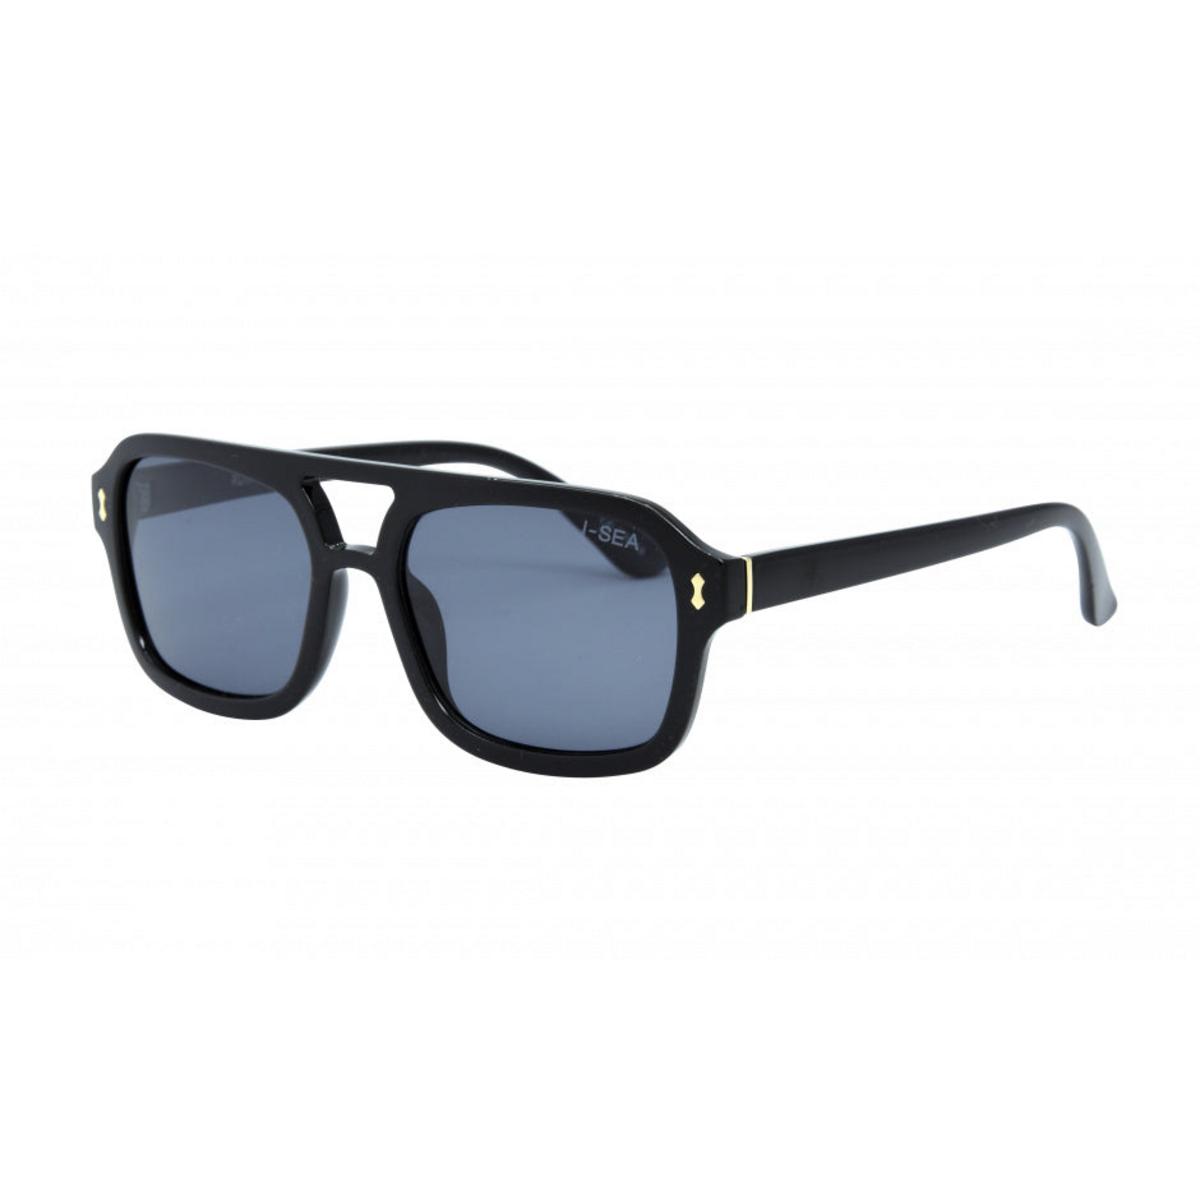 I-SEA Royal Sunglasses